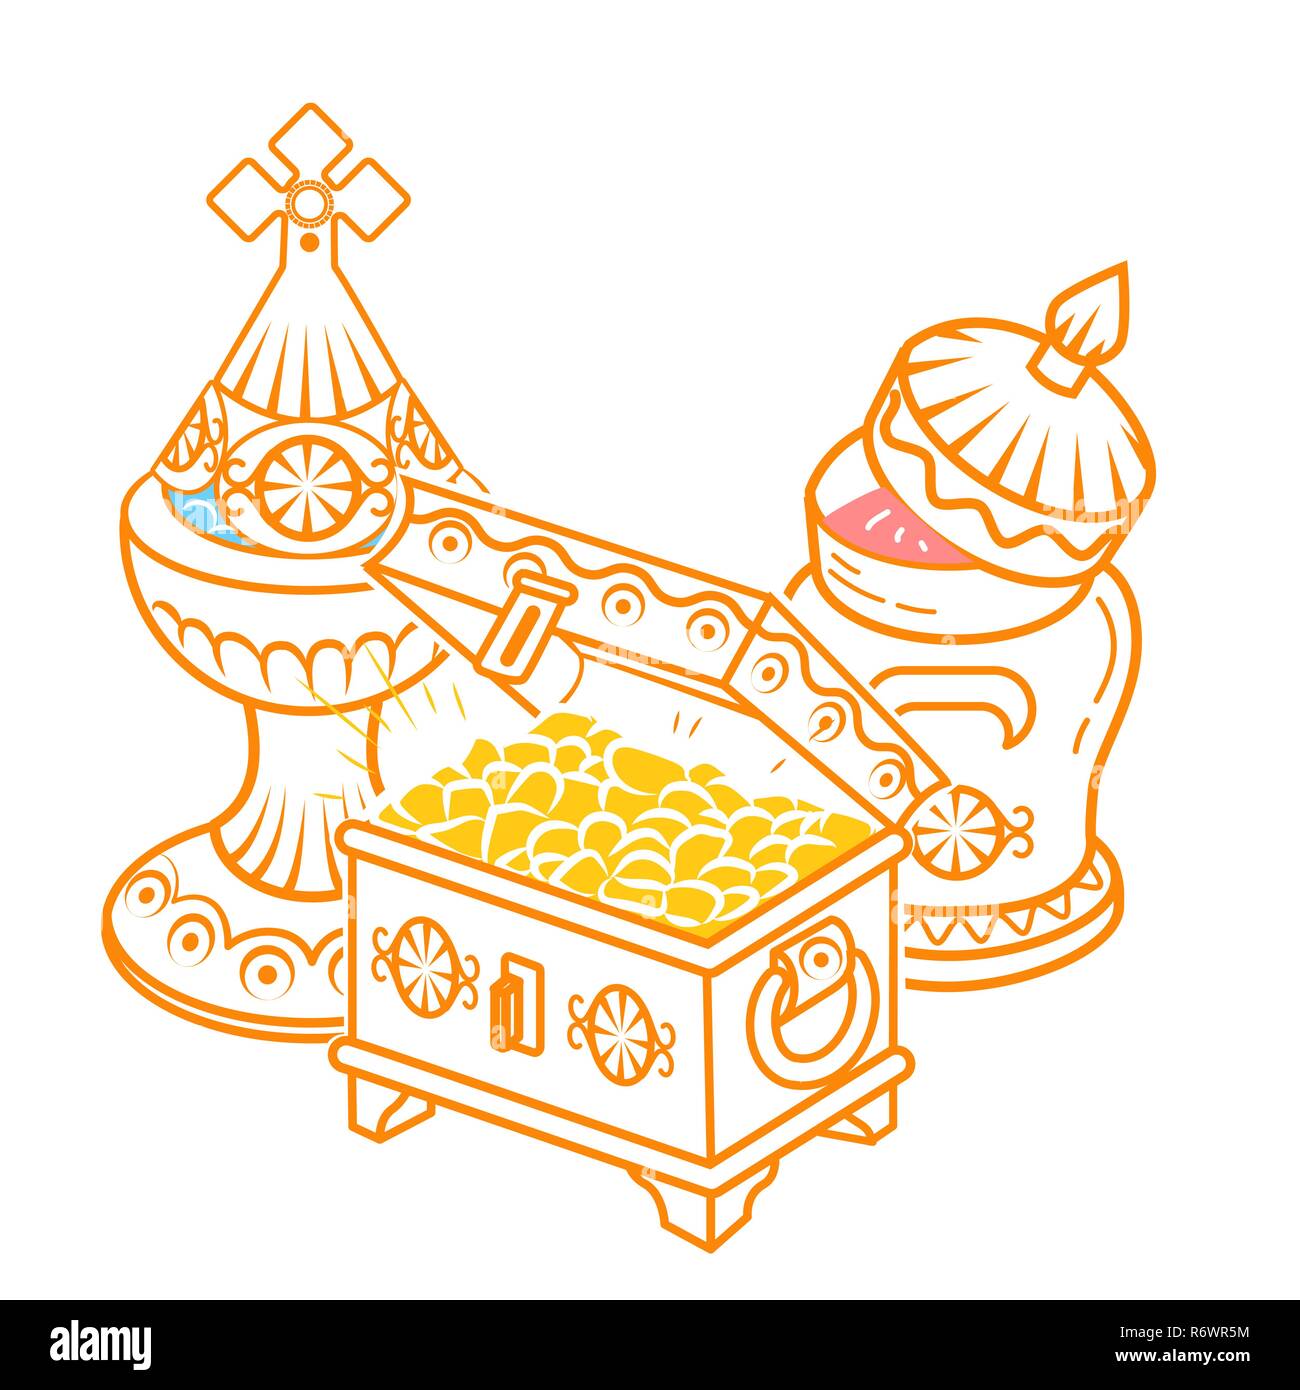 Dans l'icône style dessiné à la main avec des Mages offerts pour célébrer l'Épiphanie : encens, myrrhe et l'or. Icône, silhouette dans un style linéaire Illustration de Vecteur